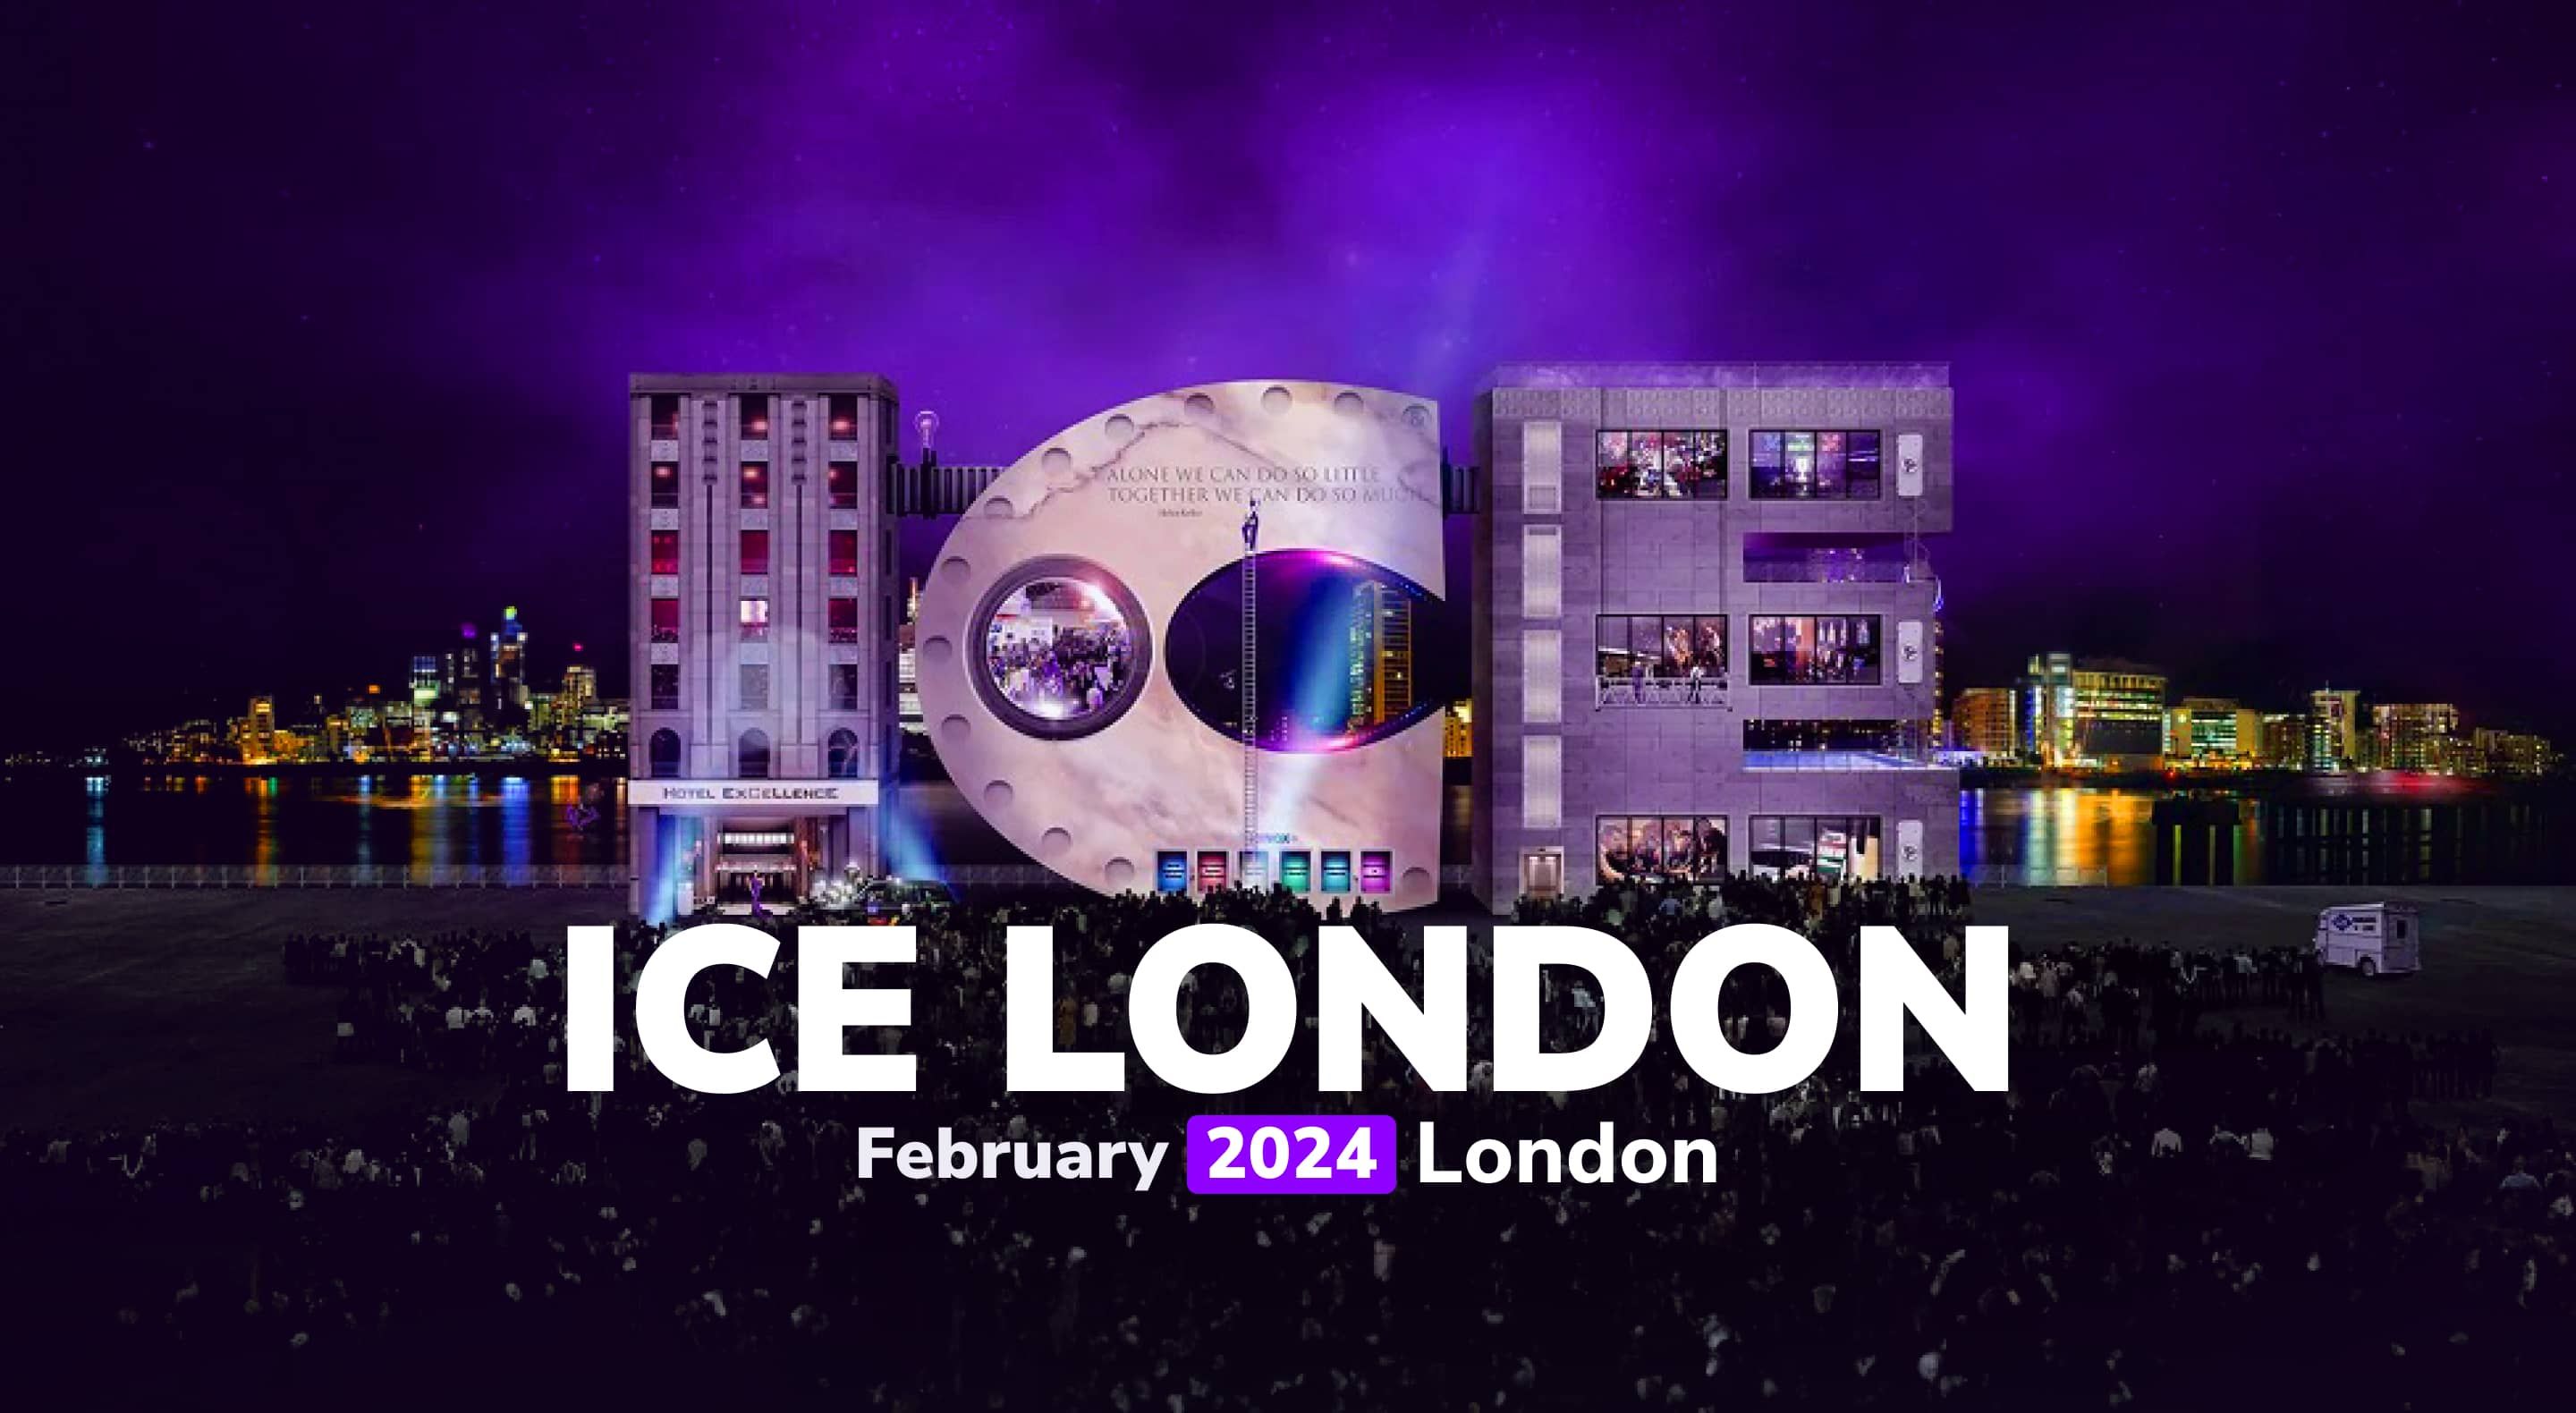 iMoon eleva la experiencia de juego en ICE Londres 2024 con la presentación de "Crash Royale"